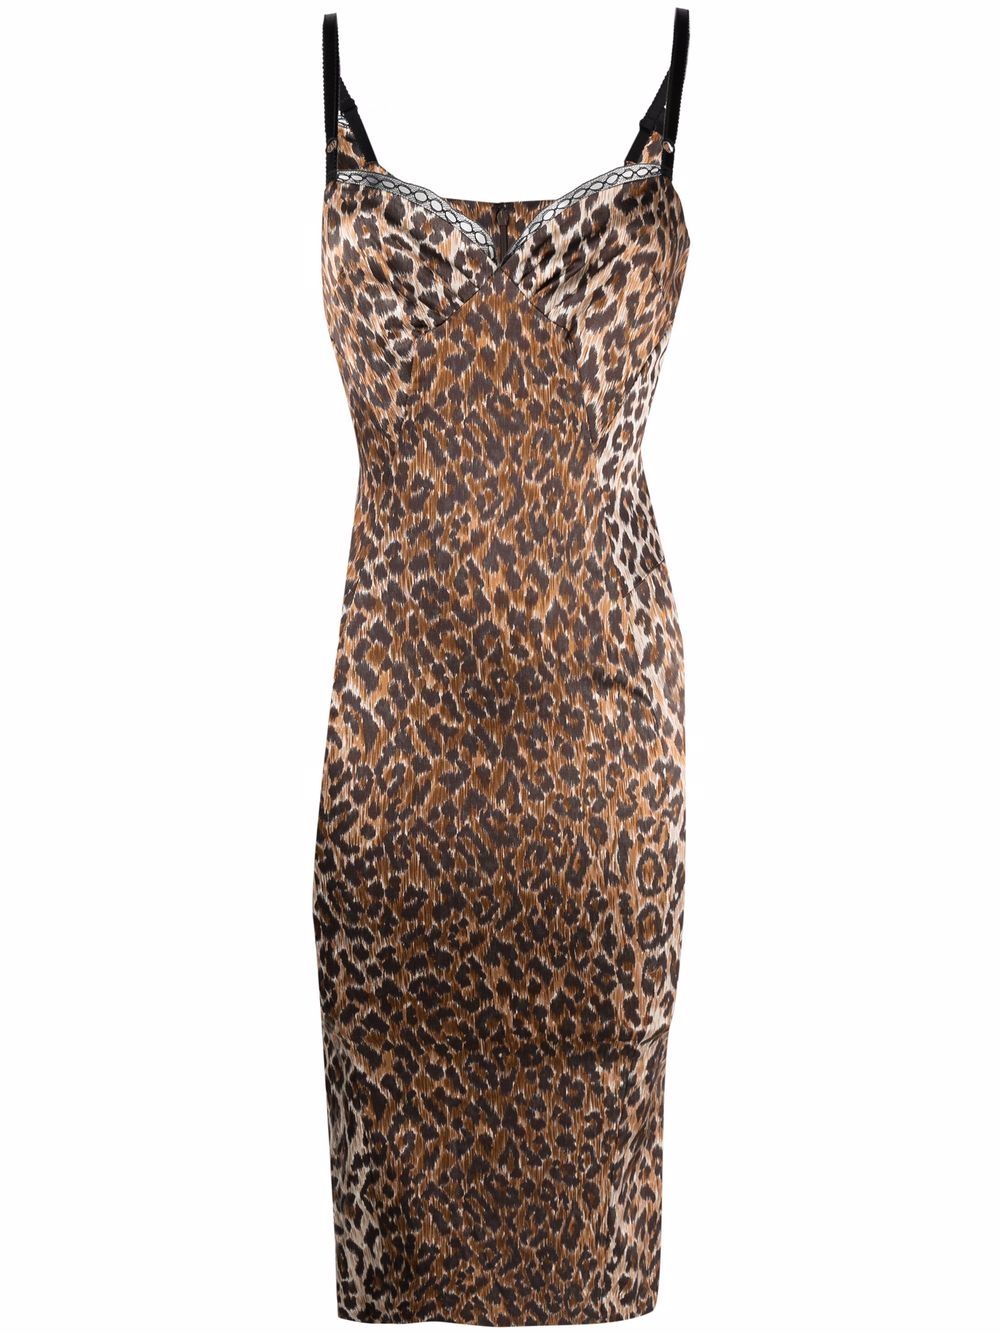 фото Dolce & gabbana pre-owned приталенное платье 1990-х годов с леопардовым принтом